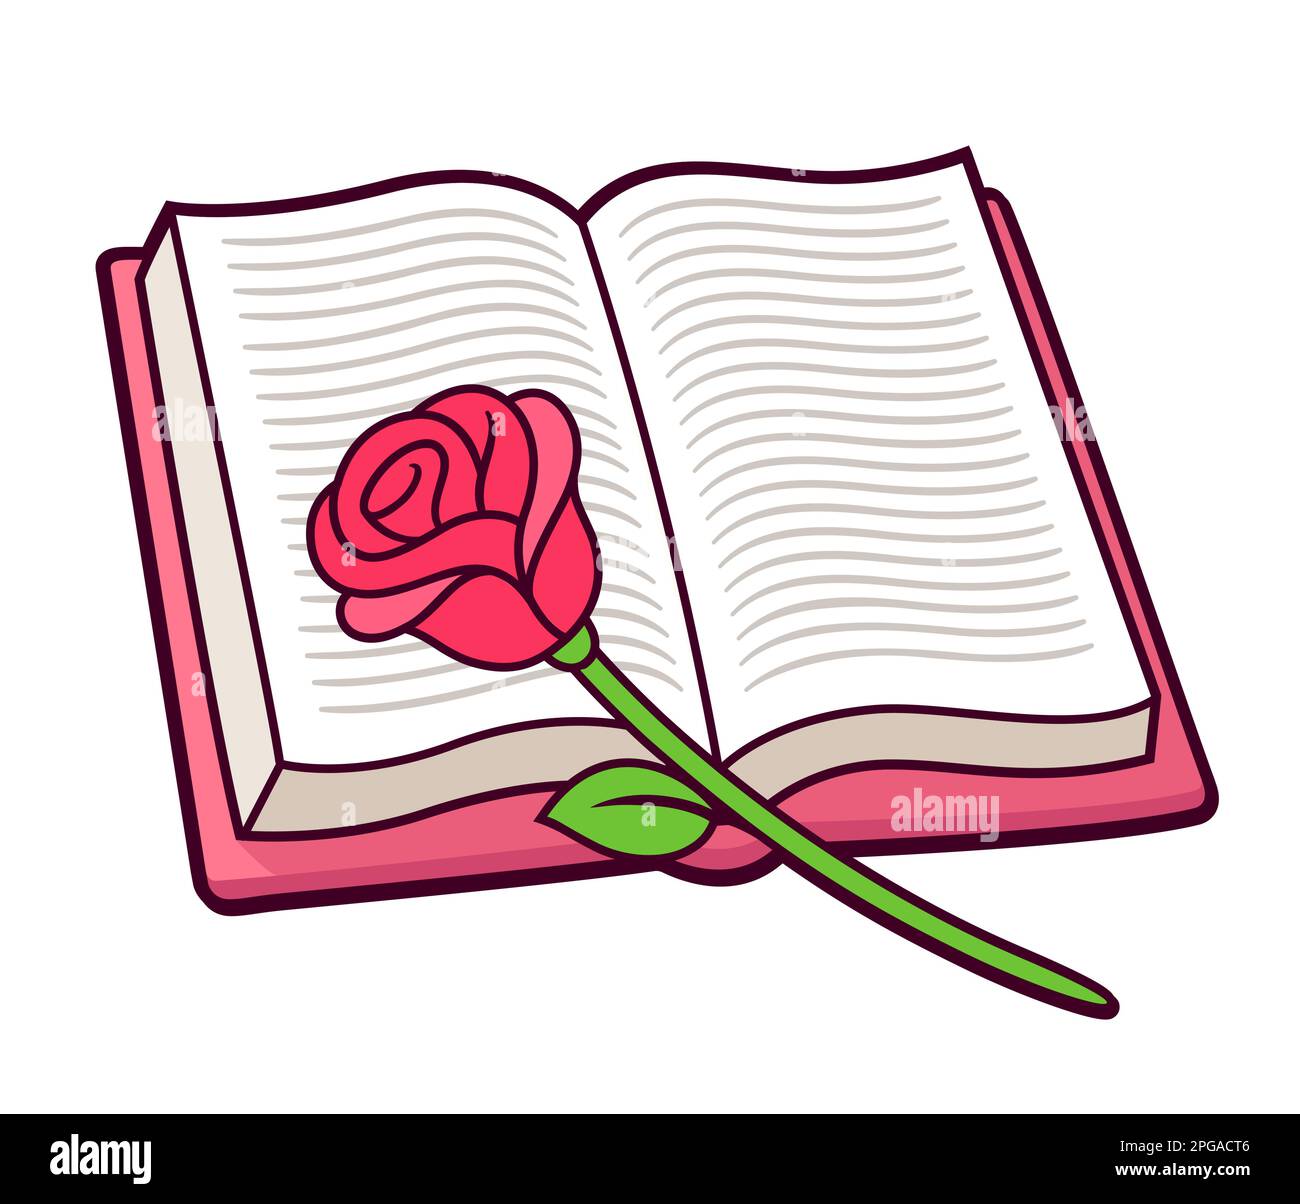 Rosa rossa su libro aperto, disegno semplice del cartone animato. Romanticismo lettura del romanzo. Illustrazione della clip vettoriale. Illustrazione Vettoriale